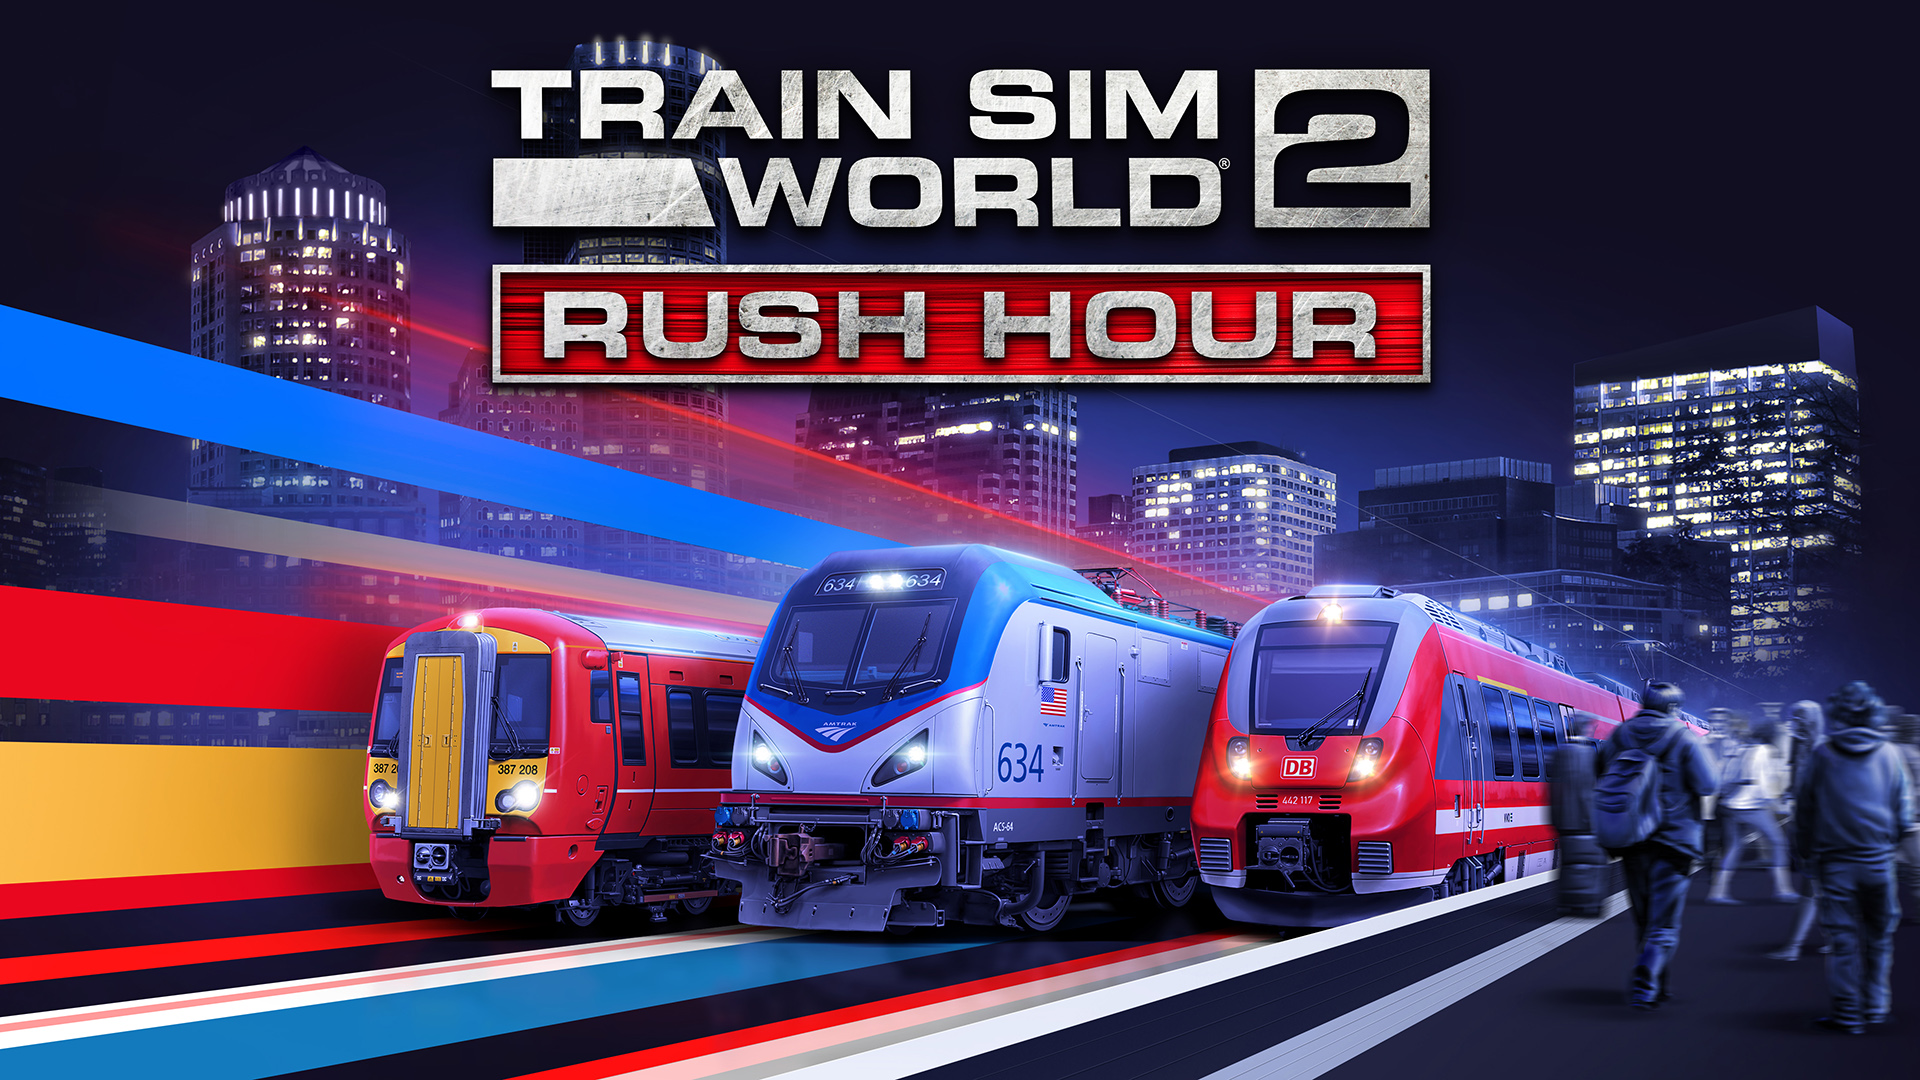 Descargar fondos de escritorio de Train Sim World 2 HD